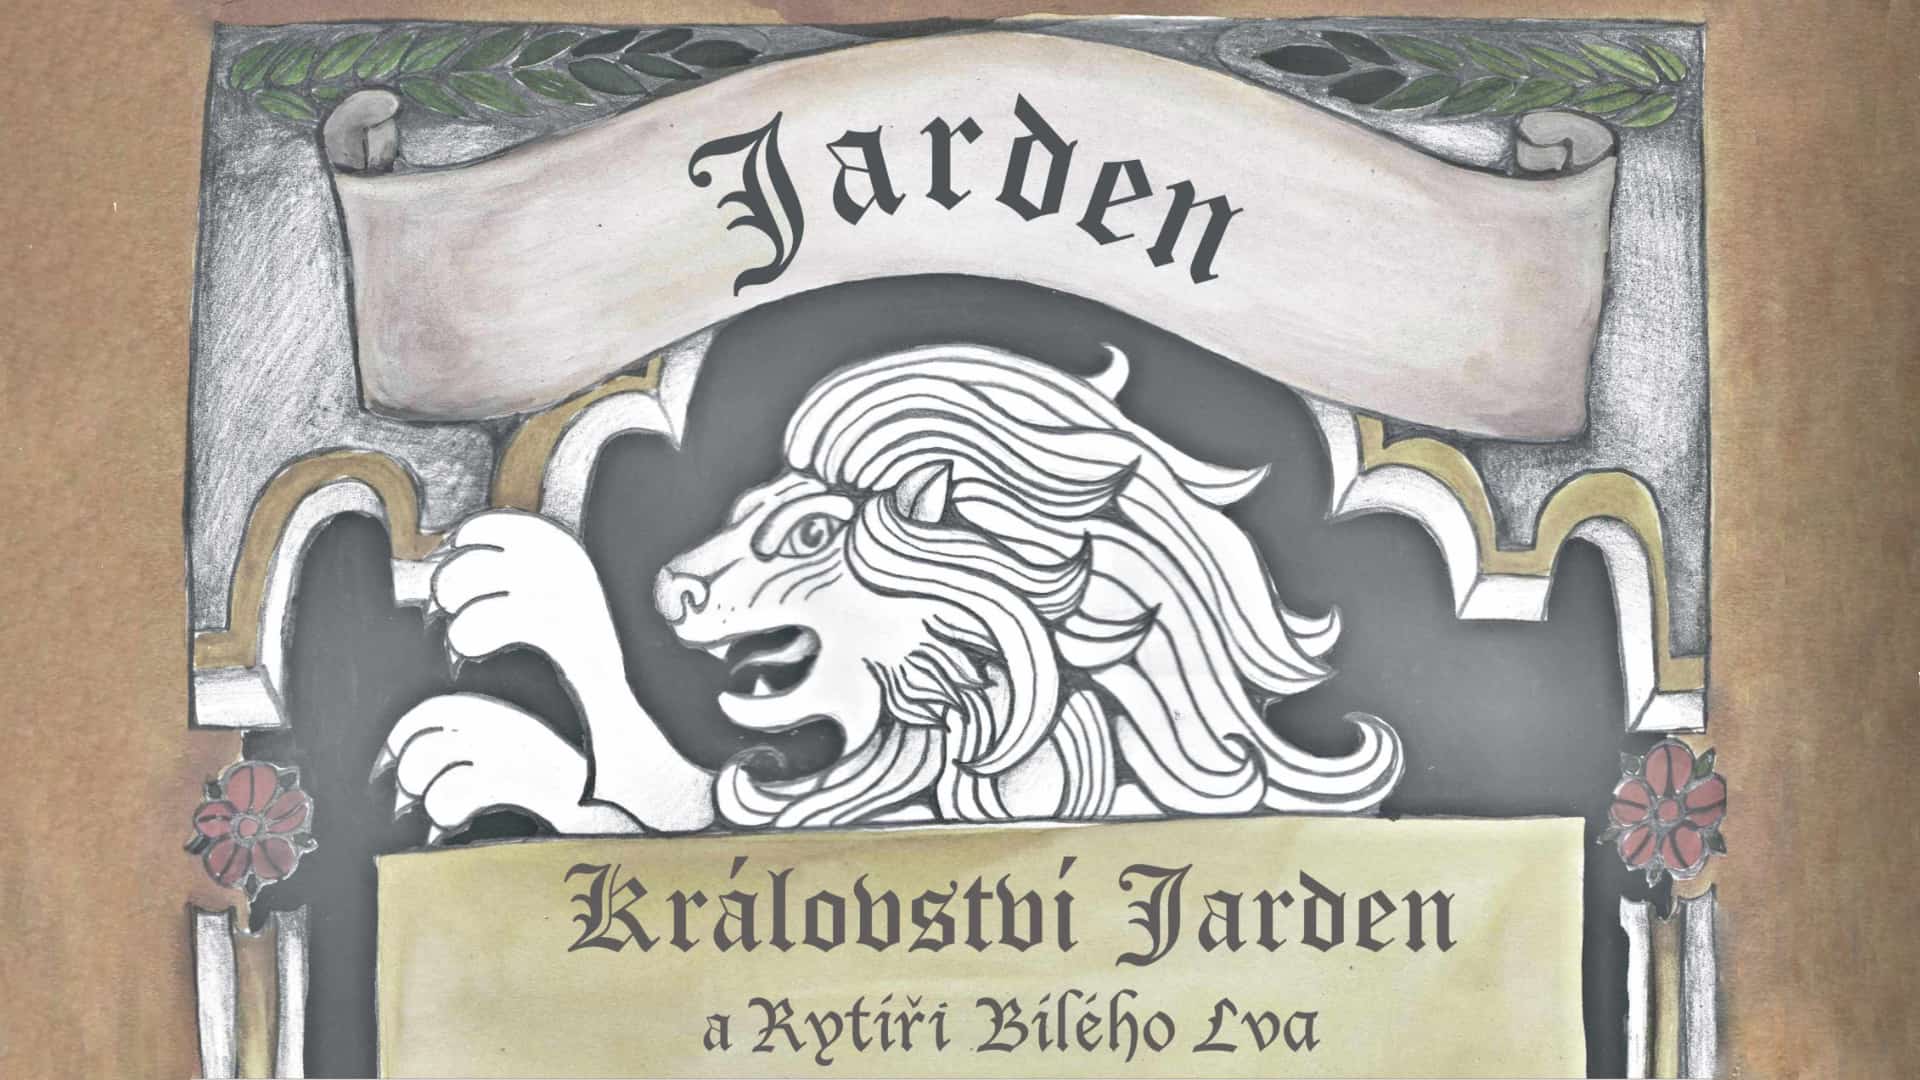 Království Jarden a rytíři Bílého lva 6